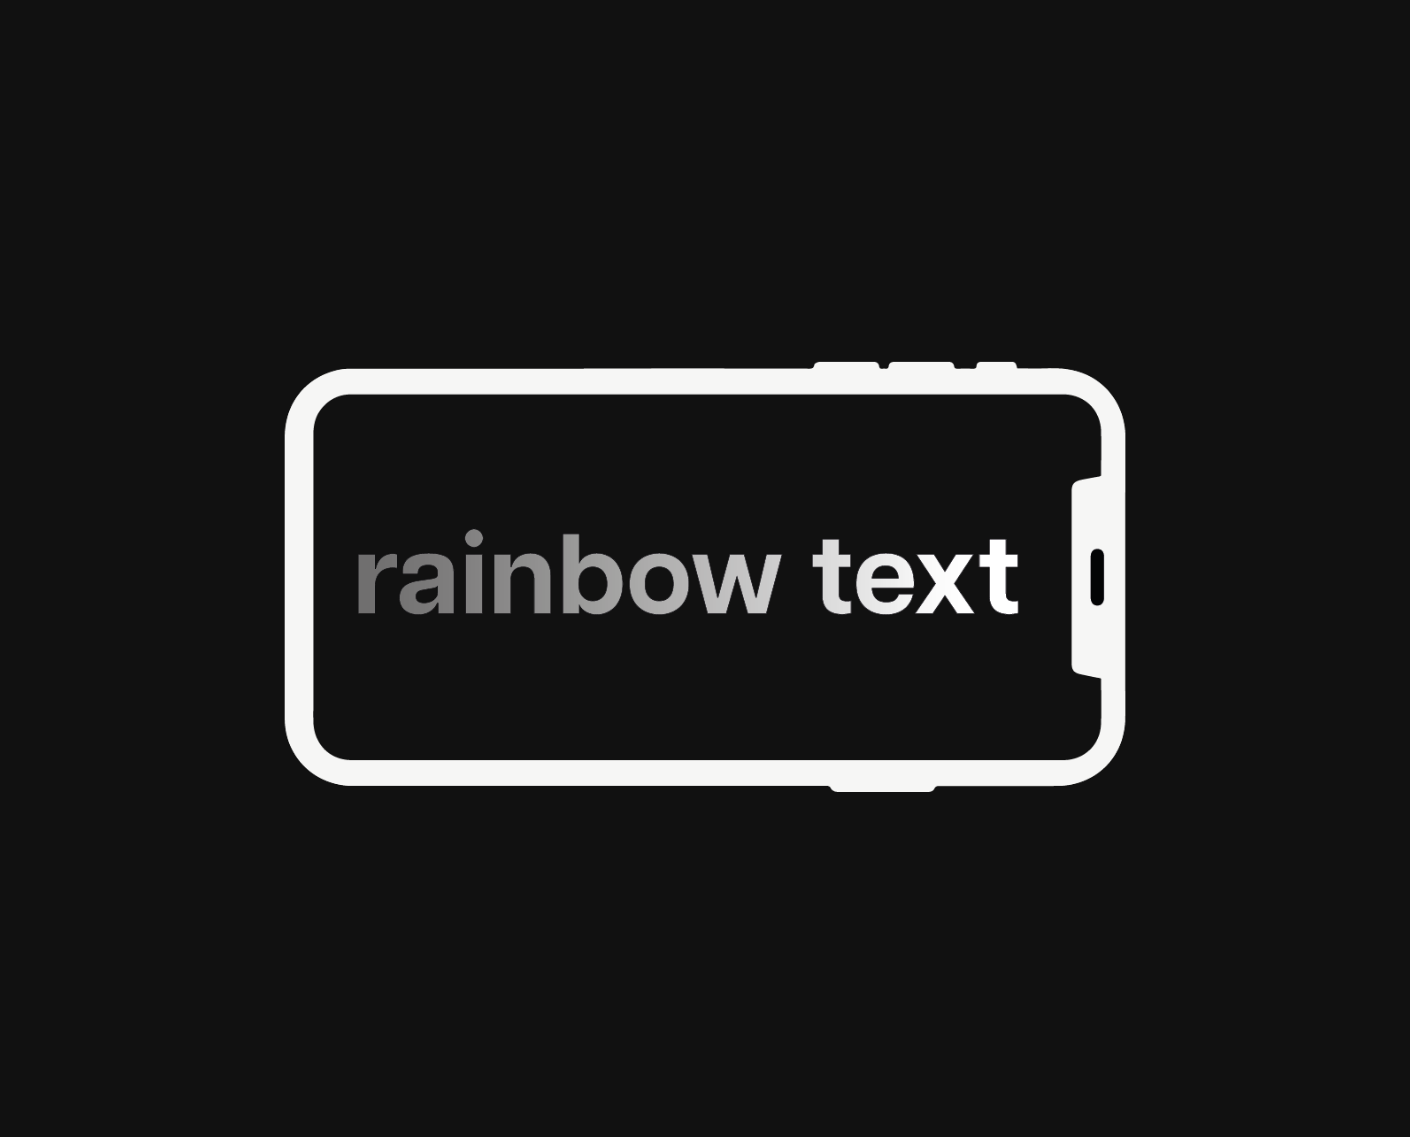 Comment créer du texte arc-en-ciel sur Instagram ? - How to create rainbow text on Instagram?